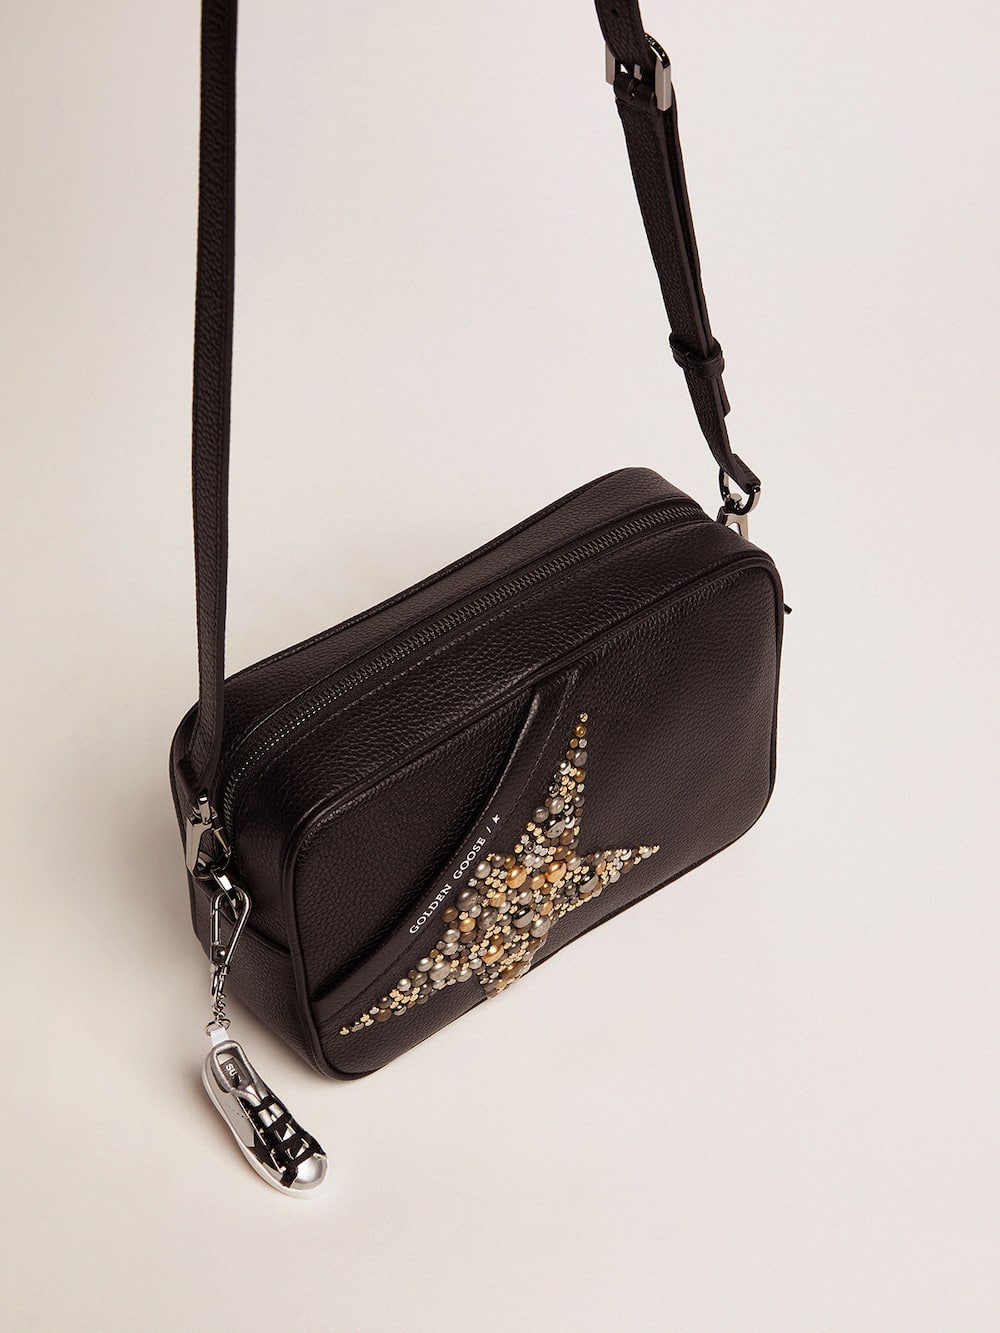 Golden Goose - Bolso Star Bag negro de piel martillada con estrella con tachas in 